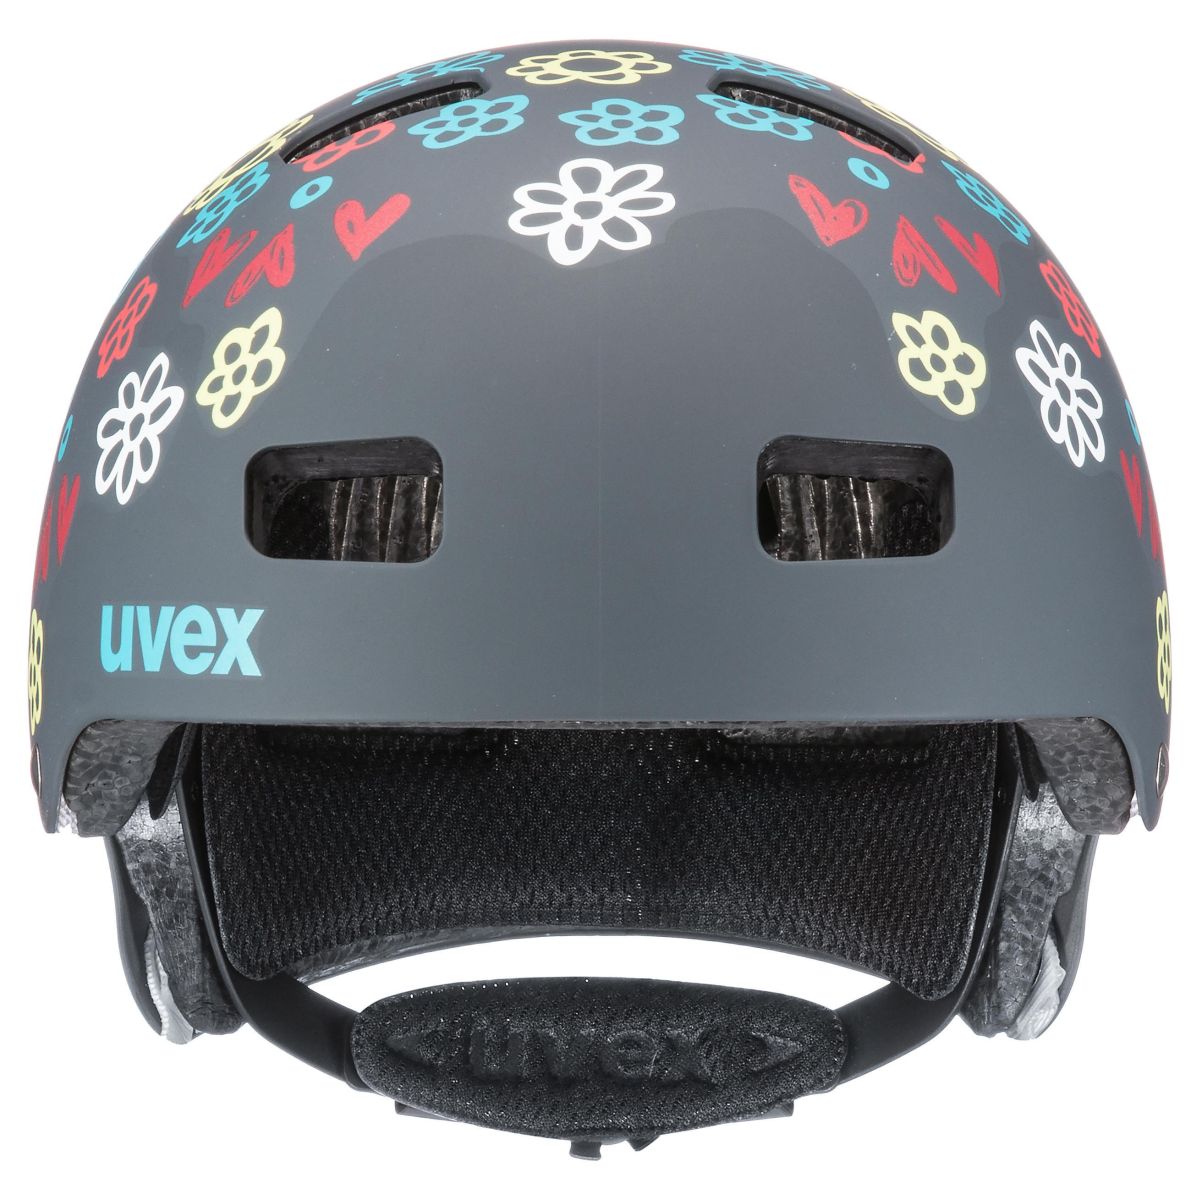 Uvex Kid 3 Kinder Dirtbike Skate Fahrrad Helm grau/gelb 2019 